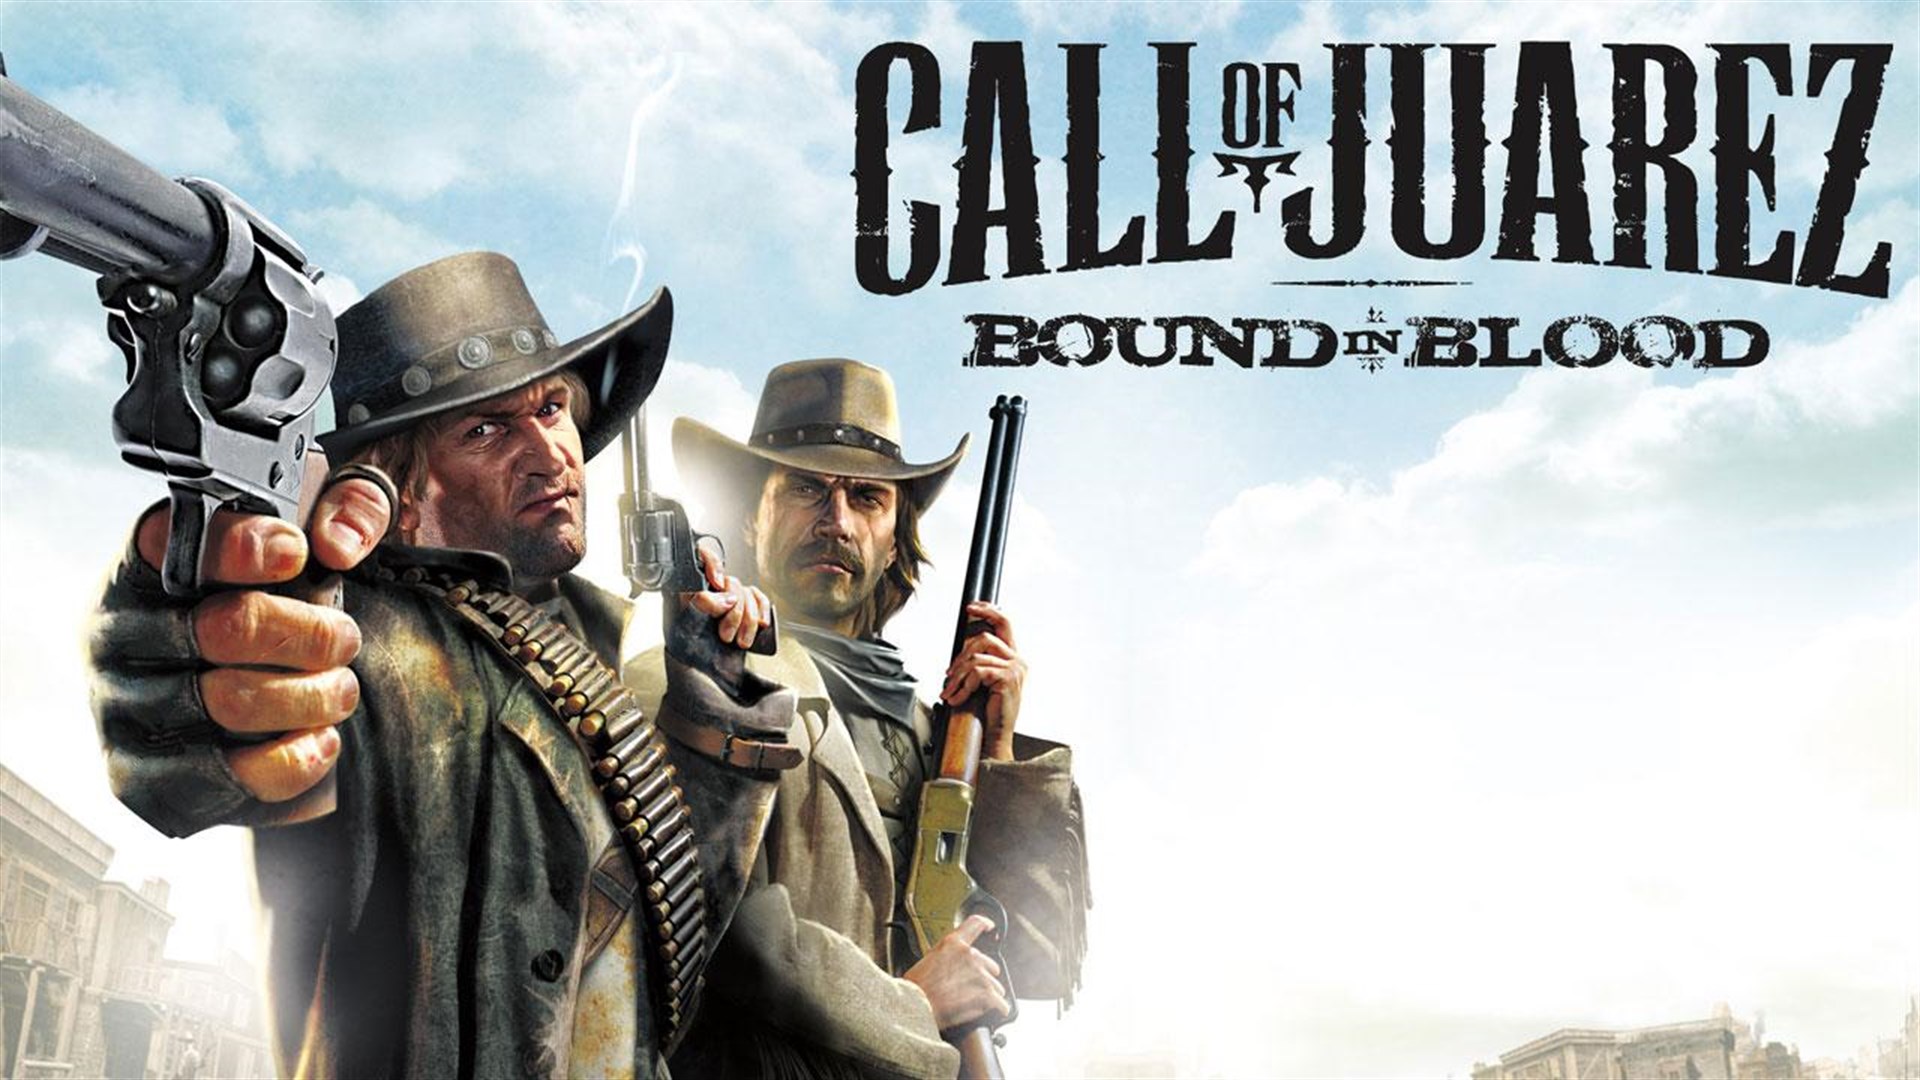 دانلود نسخه فشرده بازی Call of Juarez: Bound in Blood با حجم 1.88 گیگابایت